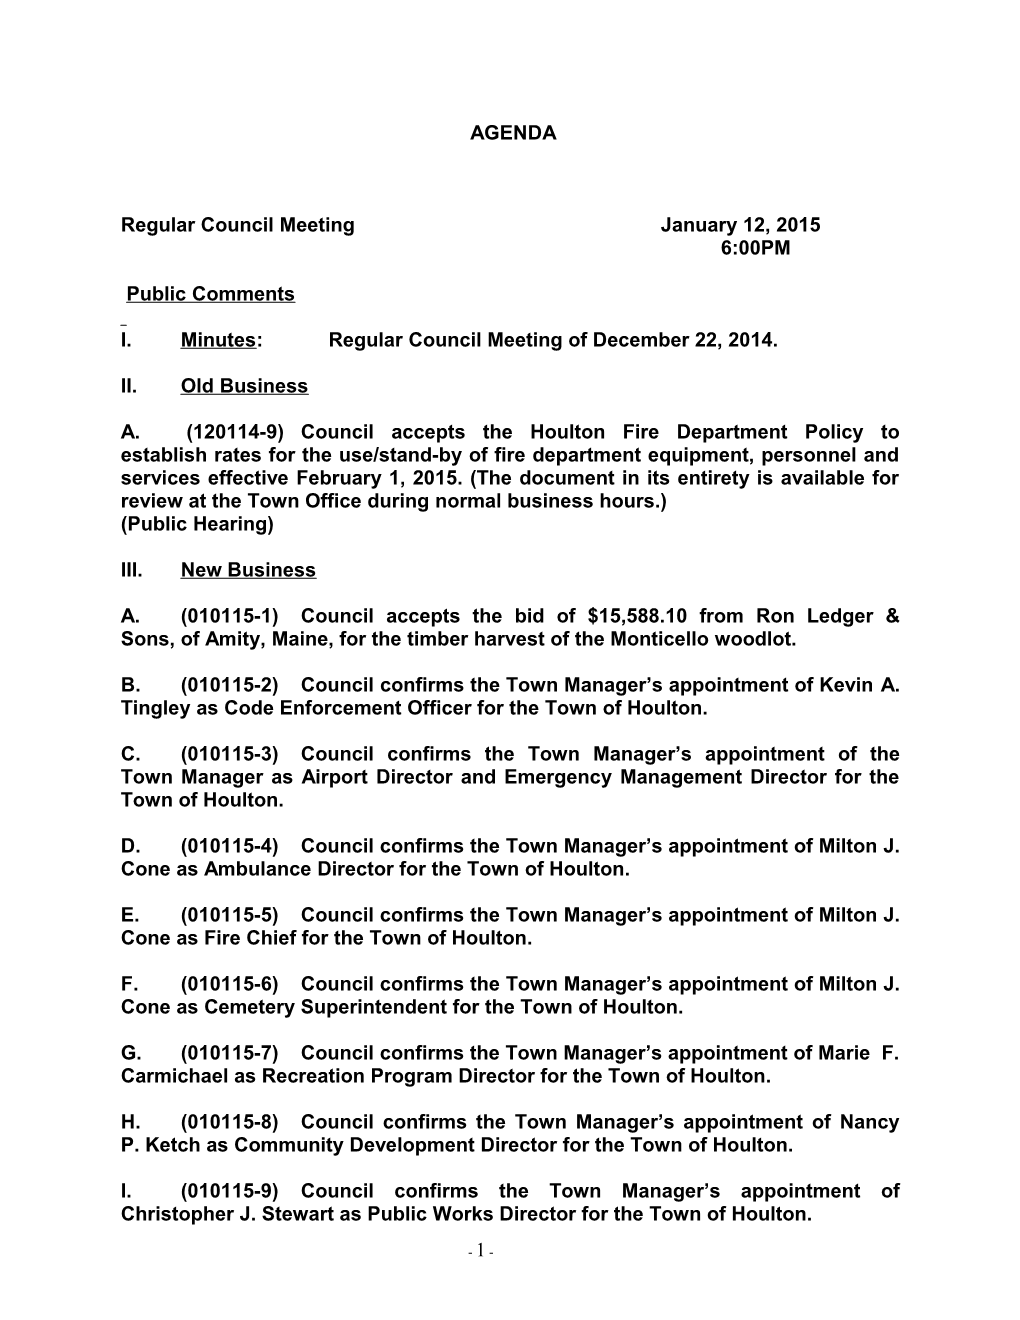 Regular Council Meeting January 12, 2015